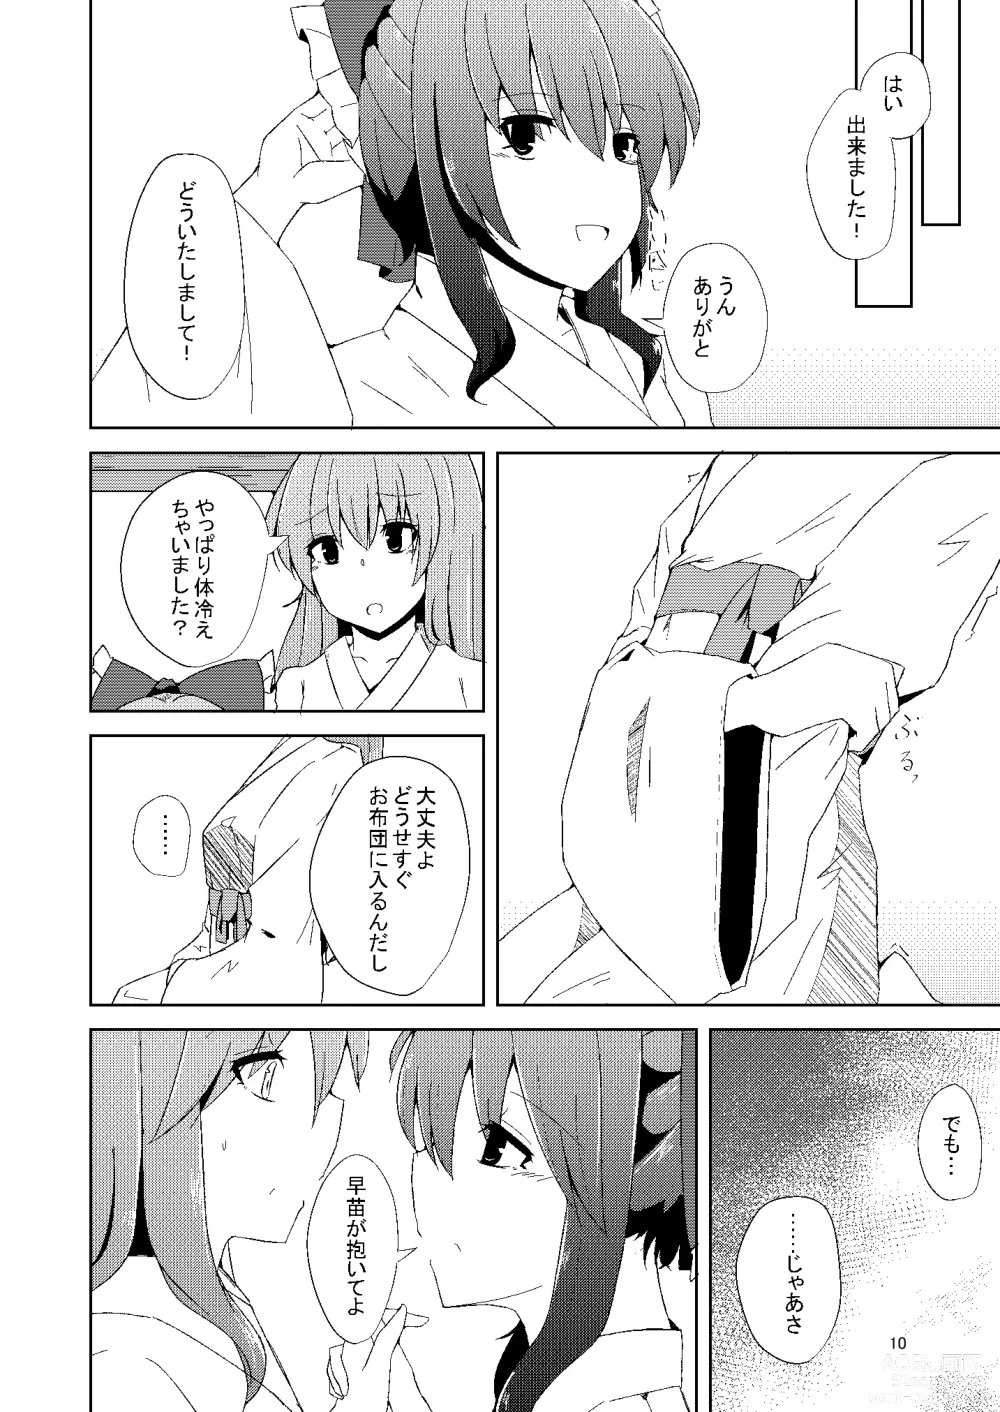 Page 9 of doujinshi Onaji desu ne